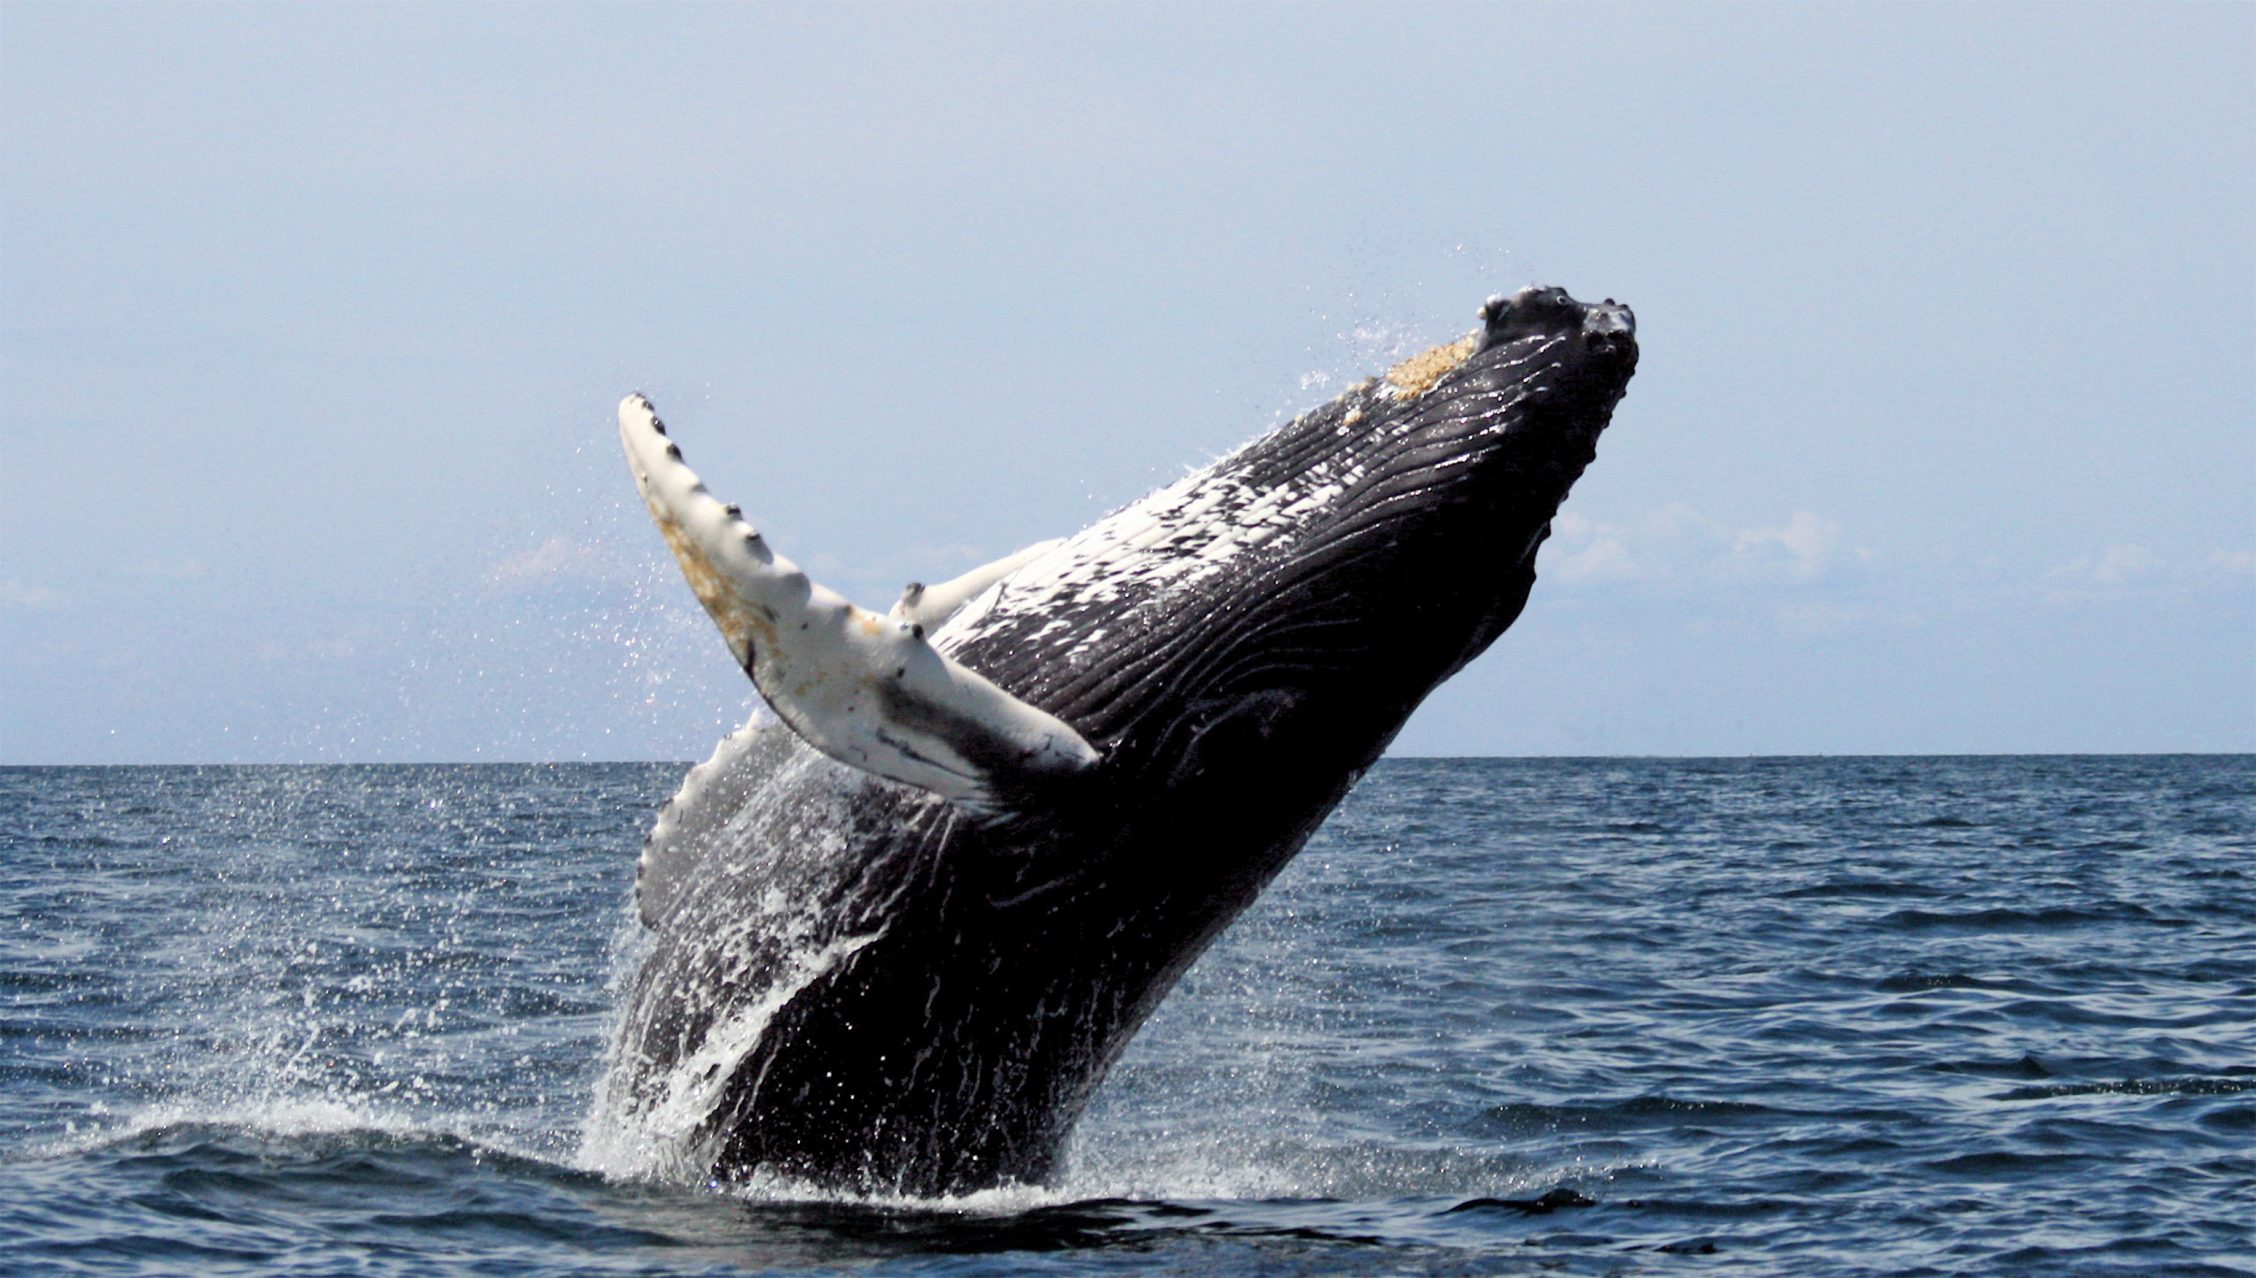 Un gran paso atrás: Islandia vuelve a autorizar la caza de ballenas tras haberla suspendido por “crueldad”